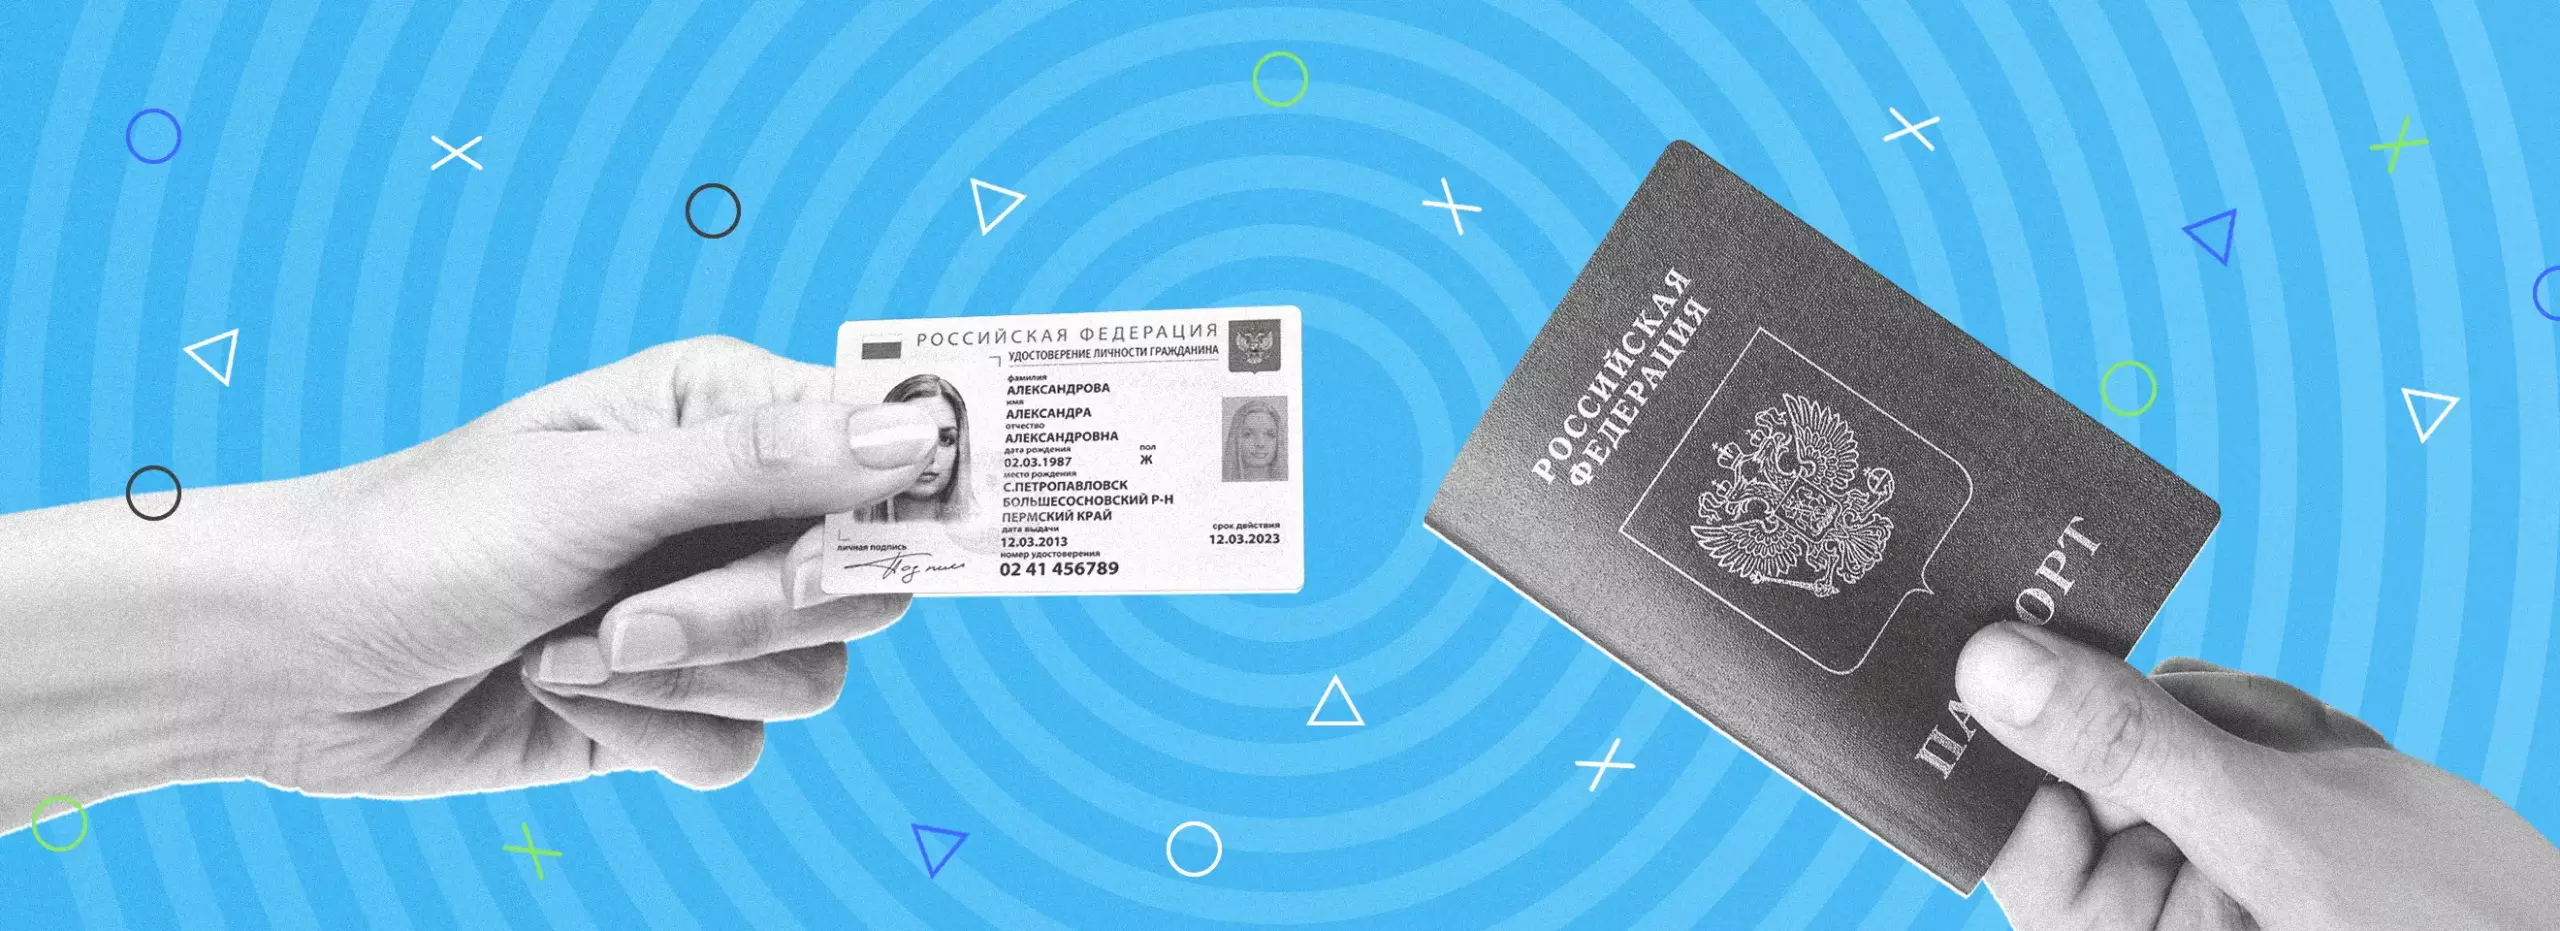 Электронный паспорт: что собой представляет, когда и где его использовать